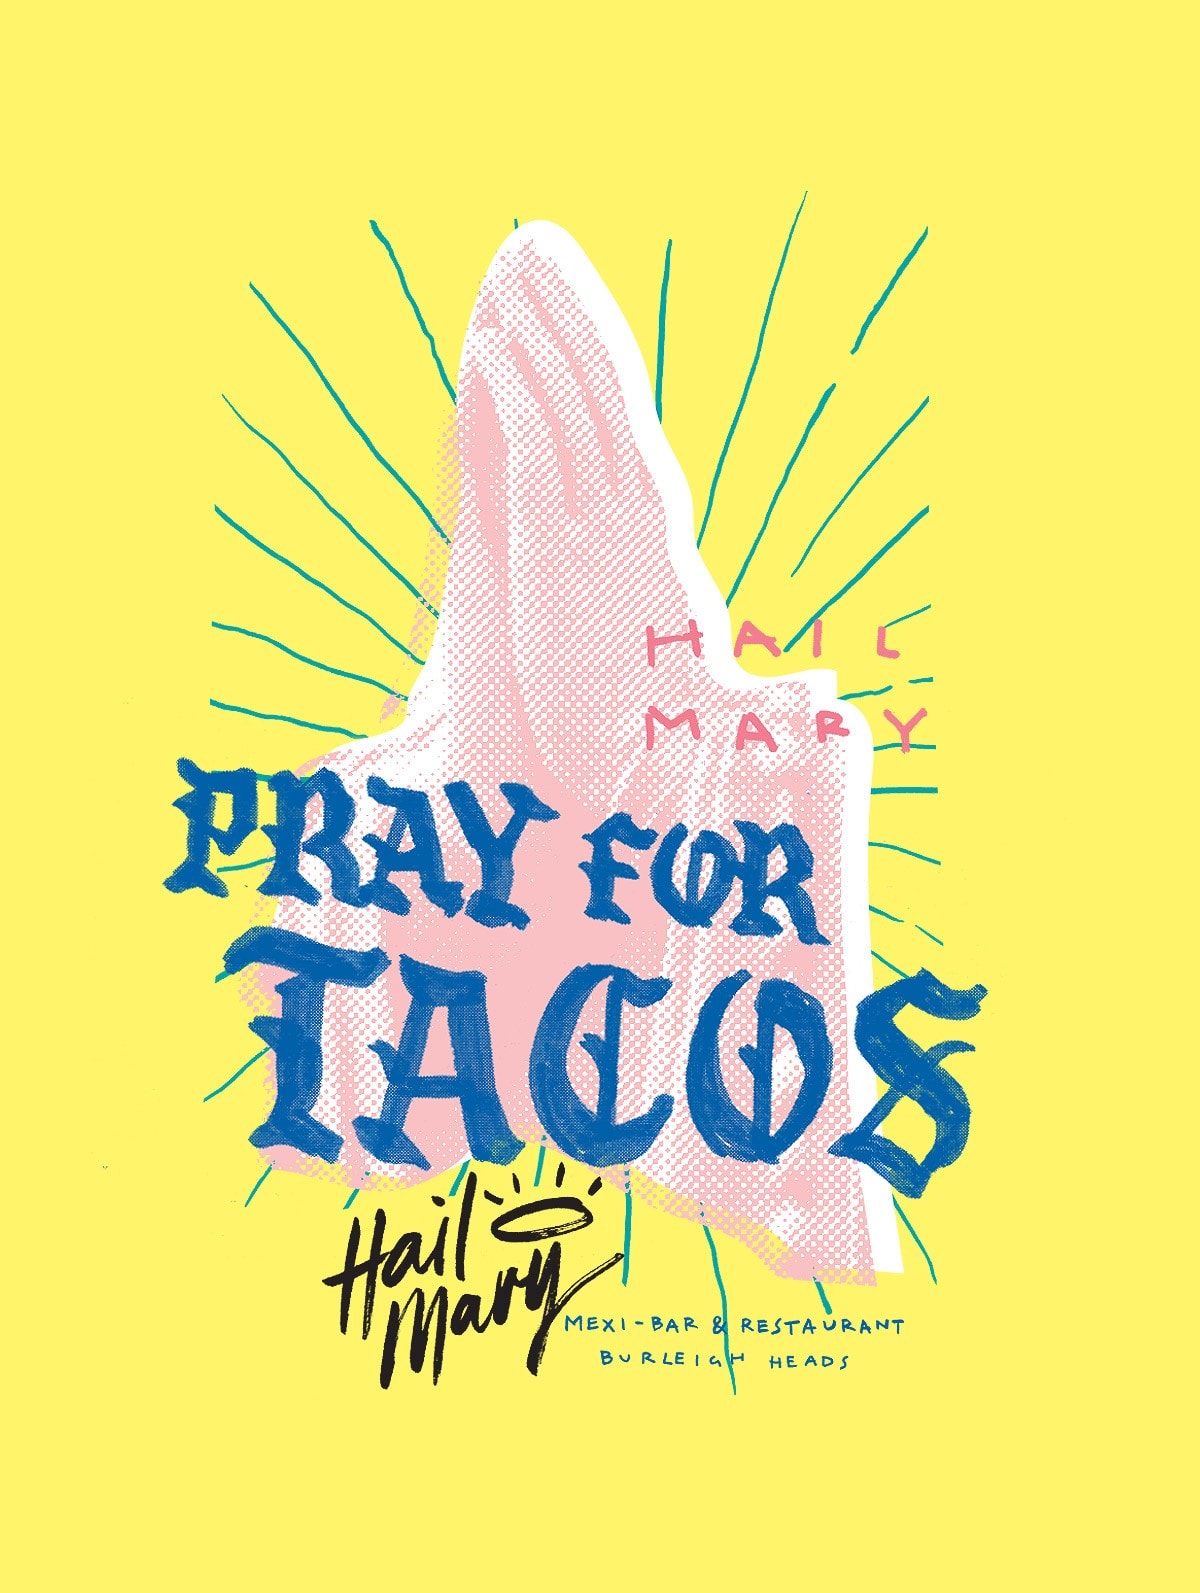 Pray-for-tacos